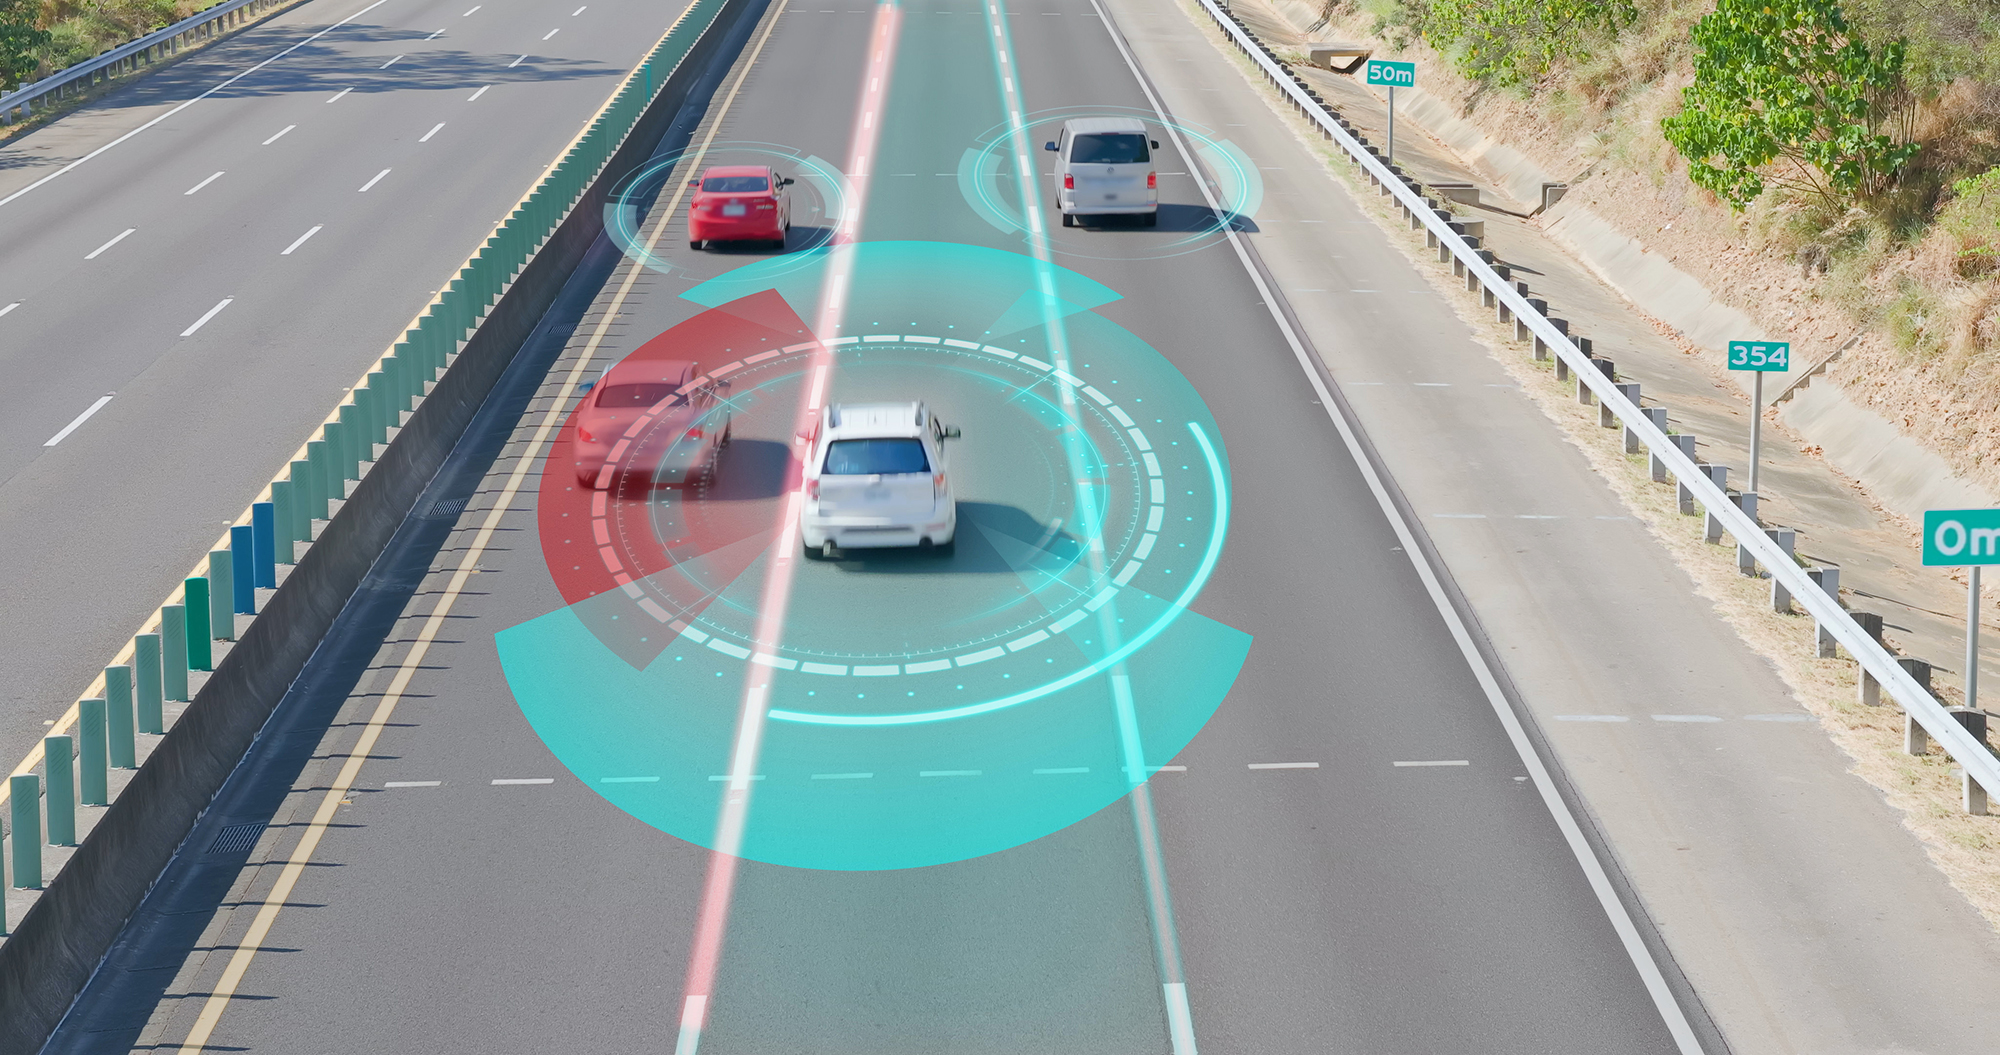 激光雷达技术通过测量反射光返回传感器所需的时间来监测车辆之间的距离。